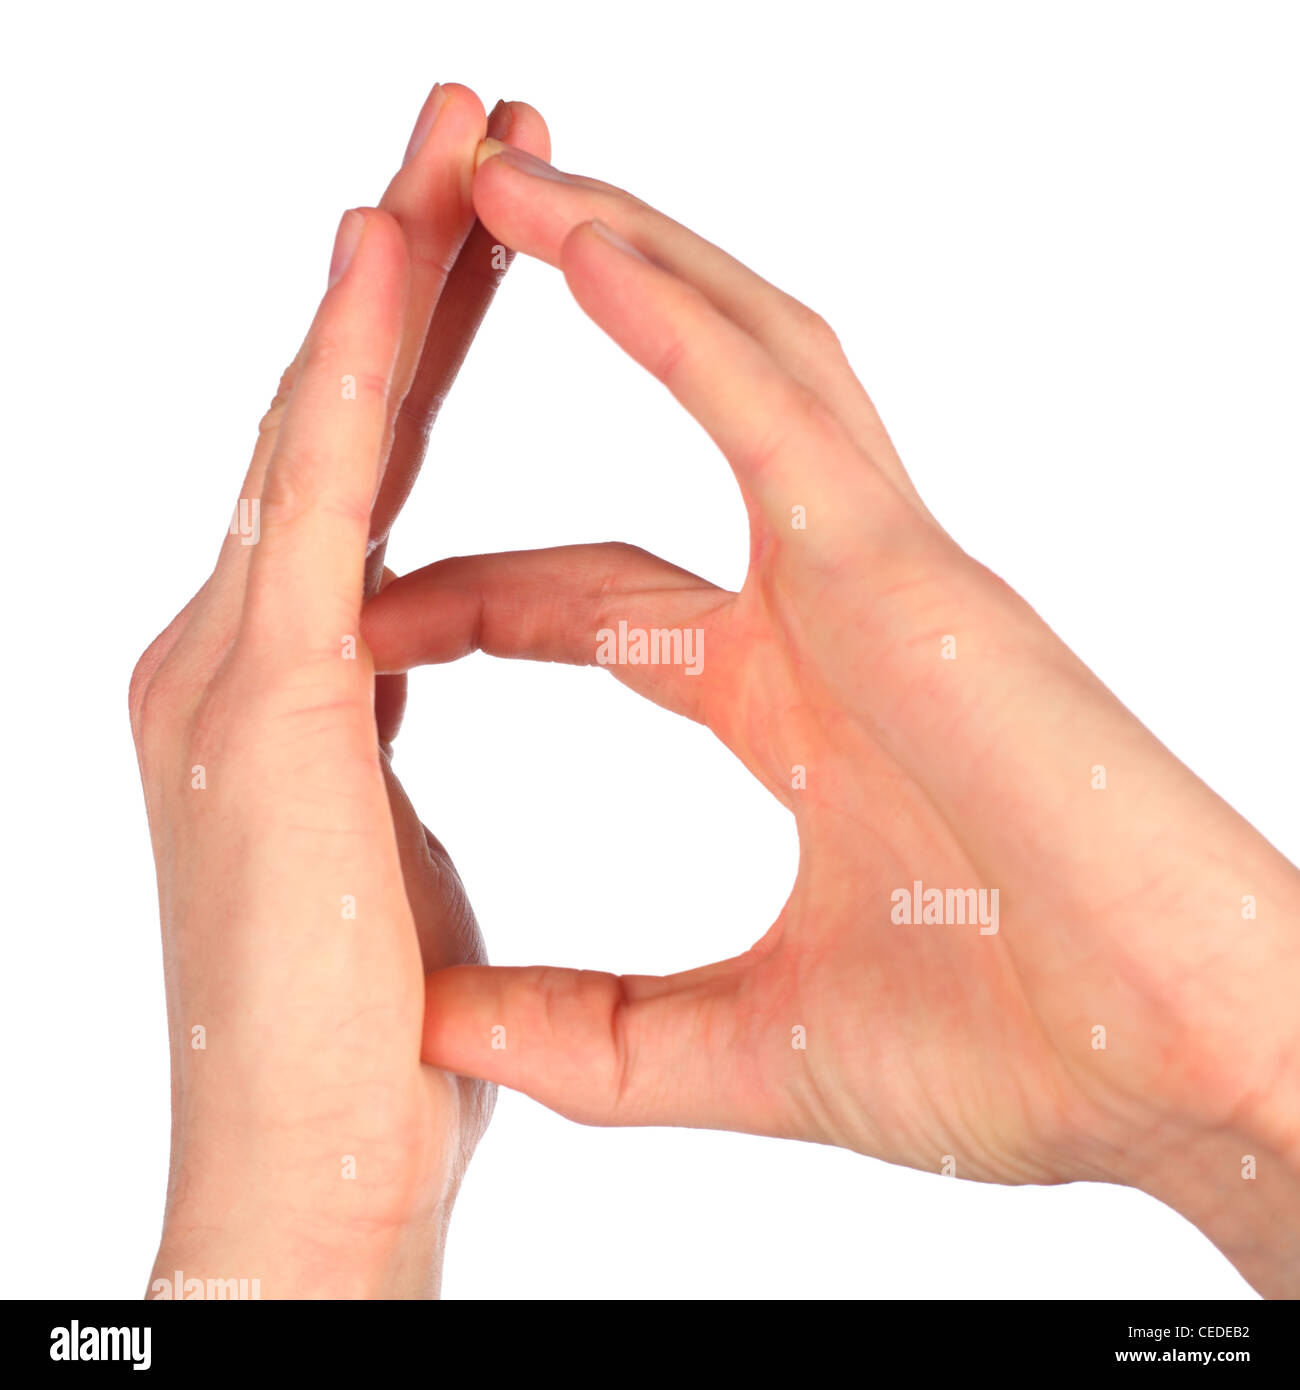 Händen stellt Buchstabe B von alphabet Stockfoto